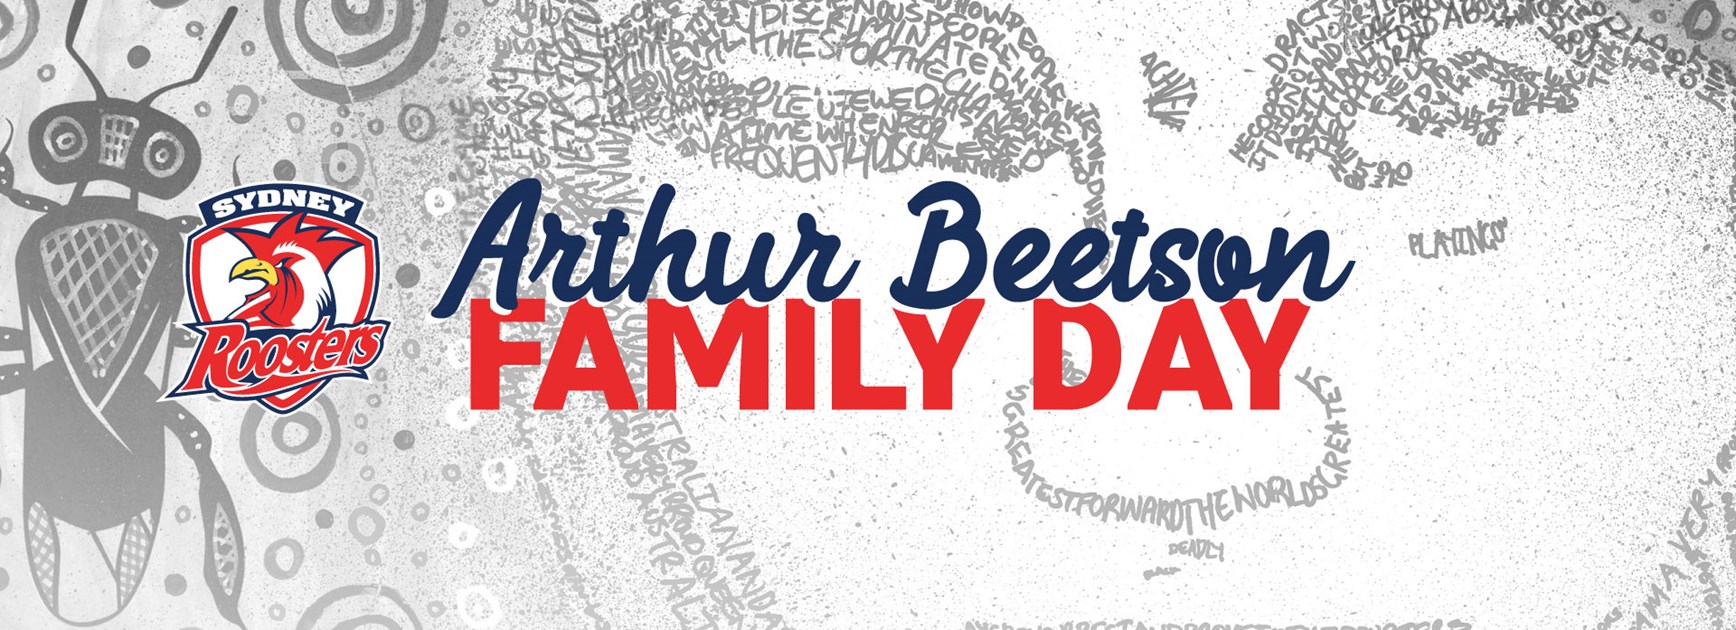 Arthur Beetson Family Day